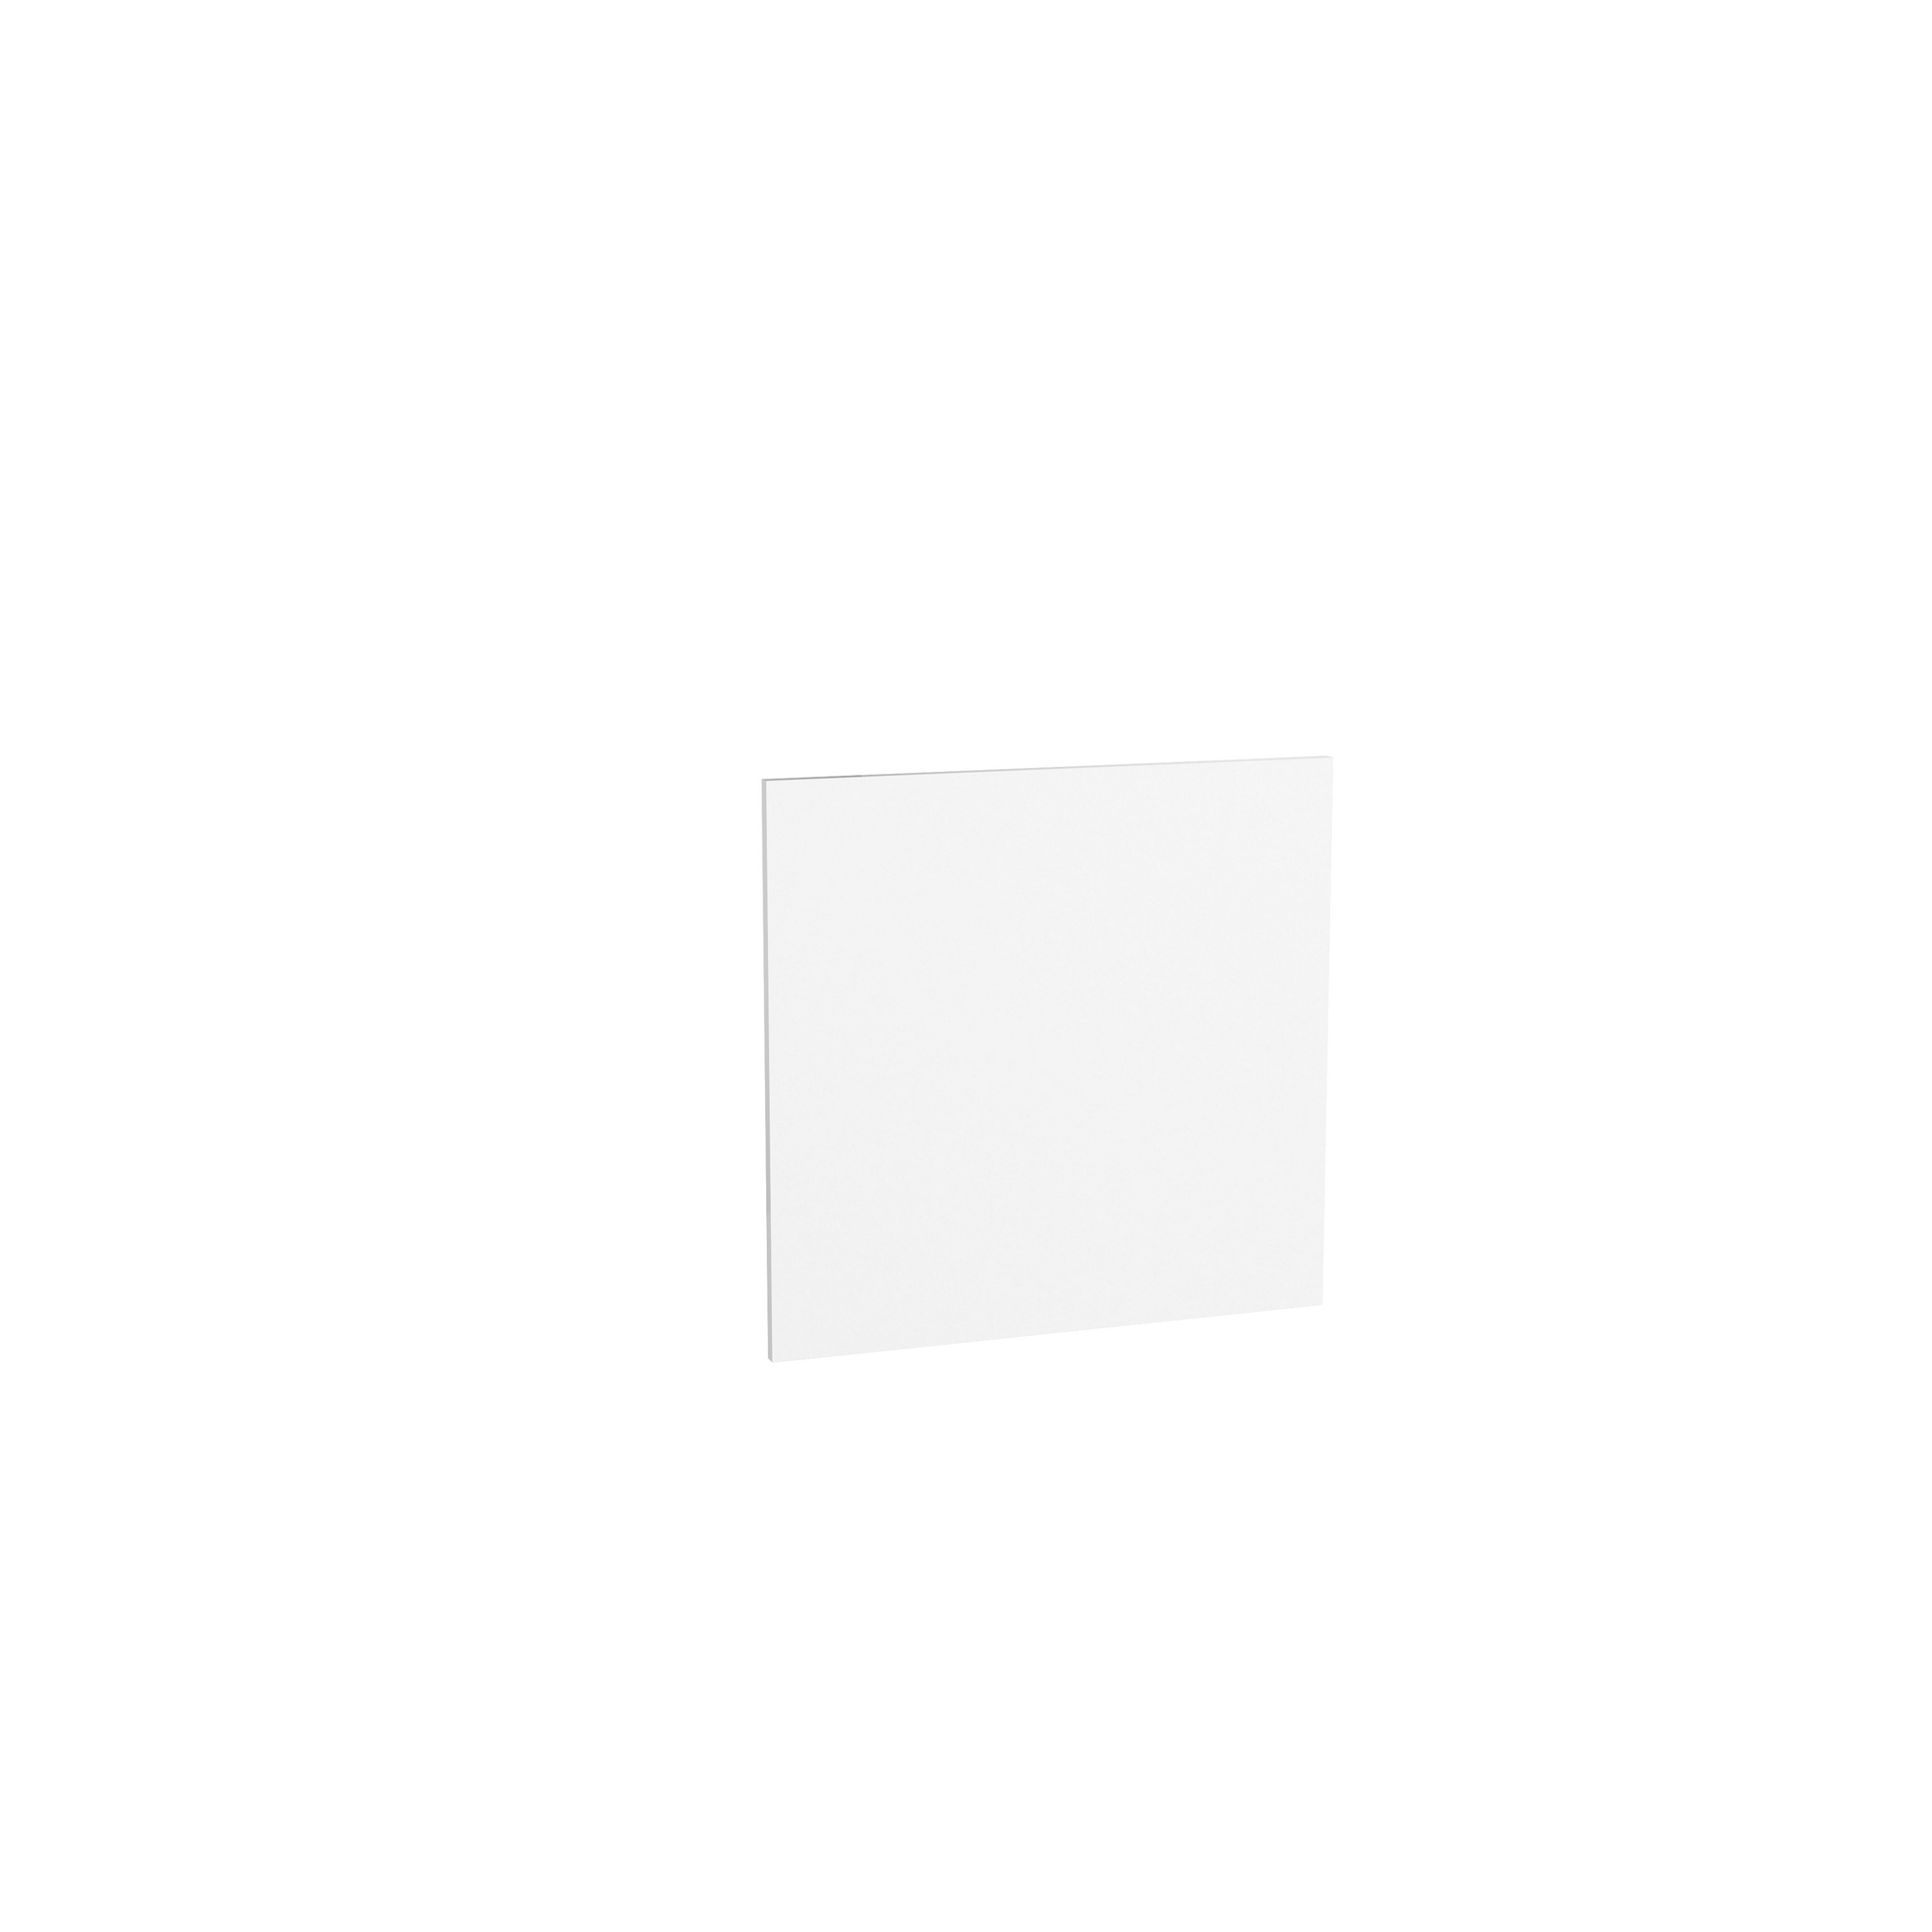 Tür für teilintegrierten Geschirrspüler 'Optikomfort Bengt932' weiß 60 x 57,2 x 1,6 cm + product picture